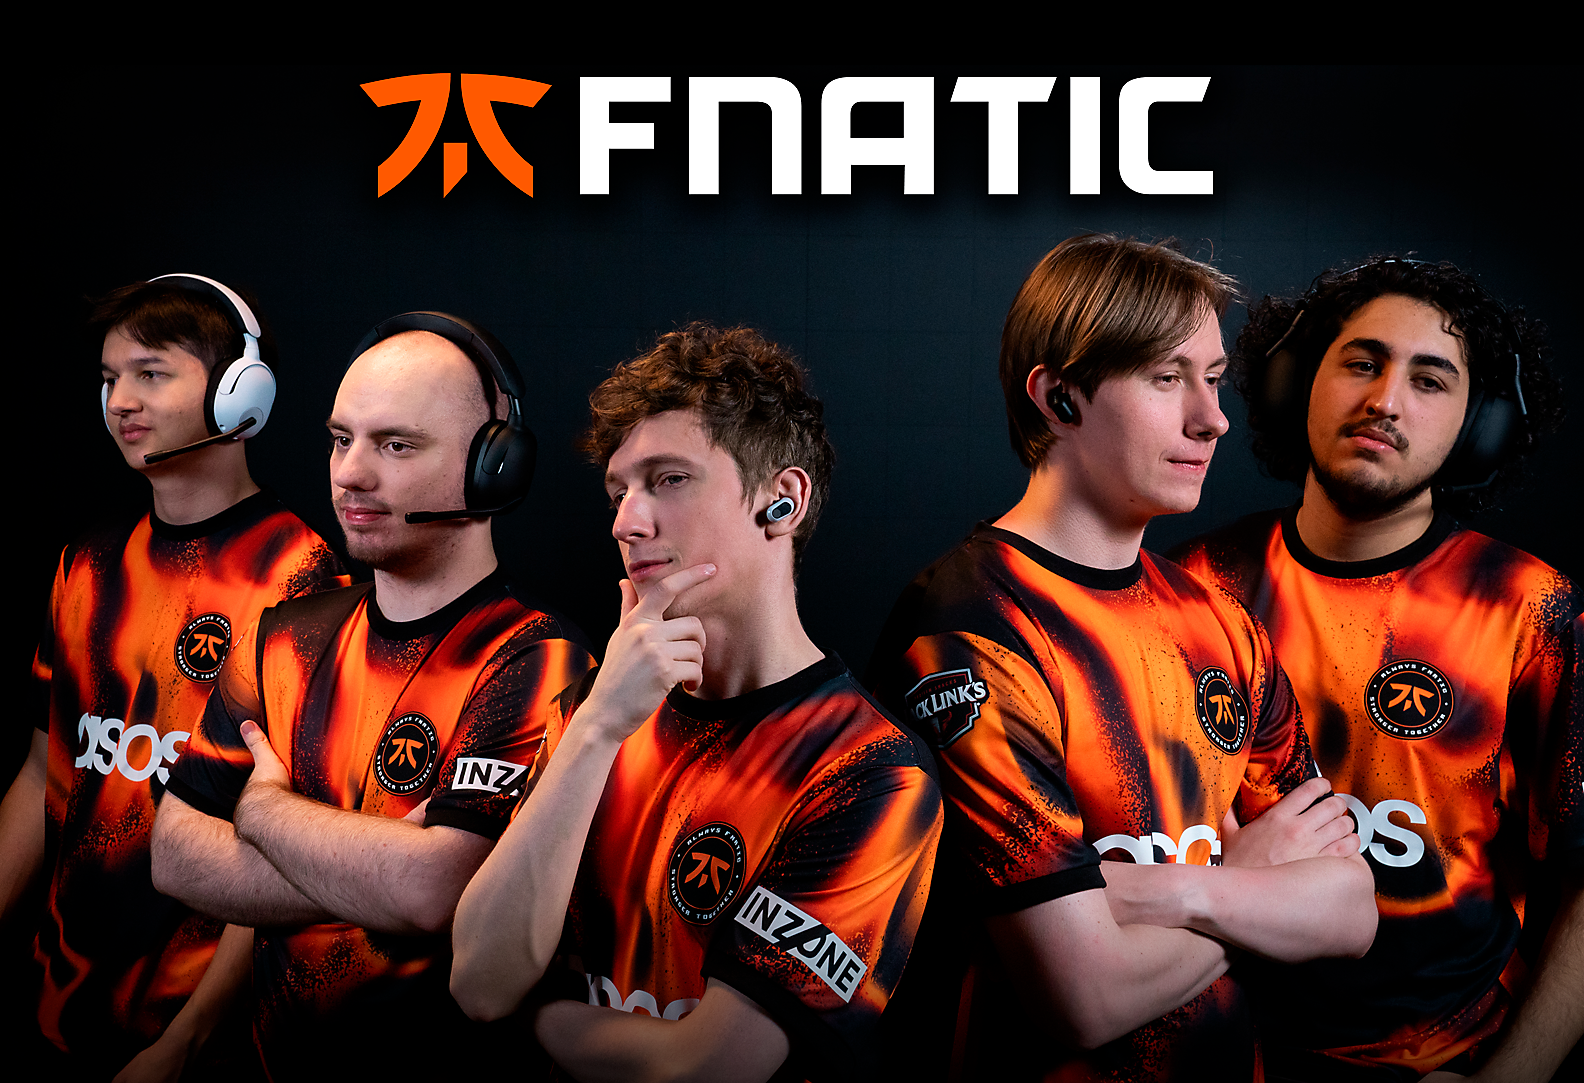 Bild des Fnatic VALORANT-Teams auf einem dunklen Hintergrund mit dem Fnatic-Logo im Vordergrund